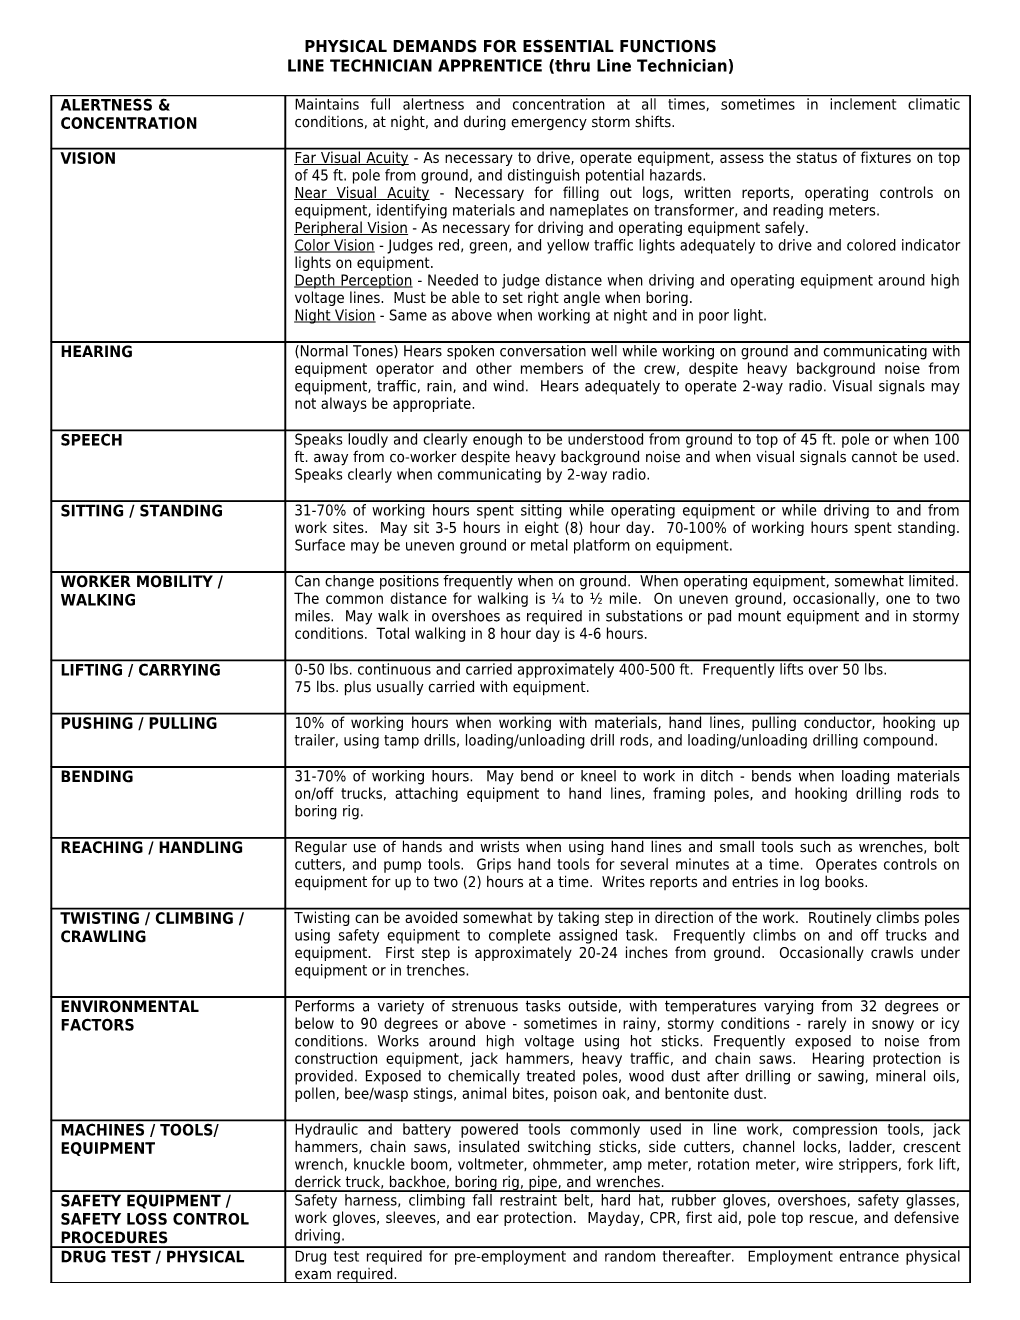 Job Analysis Worksheet